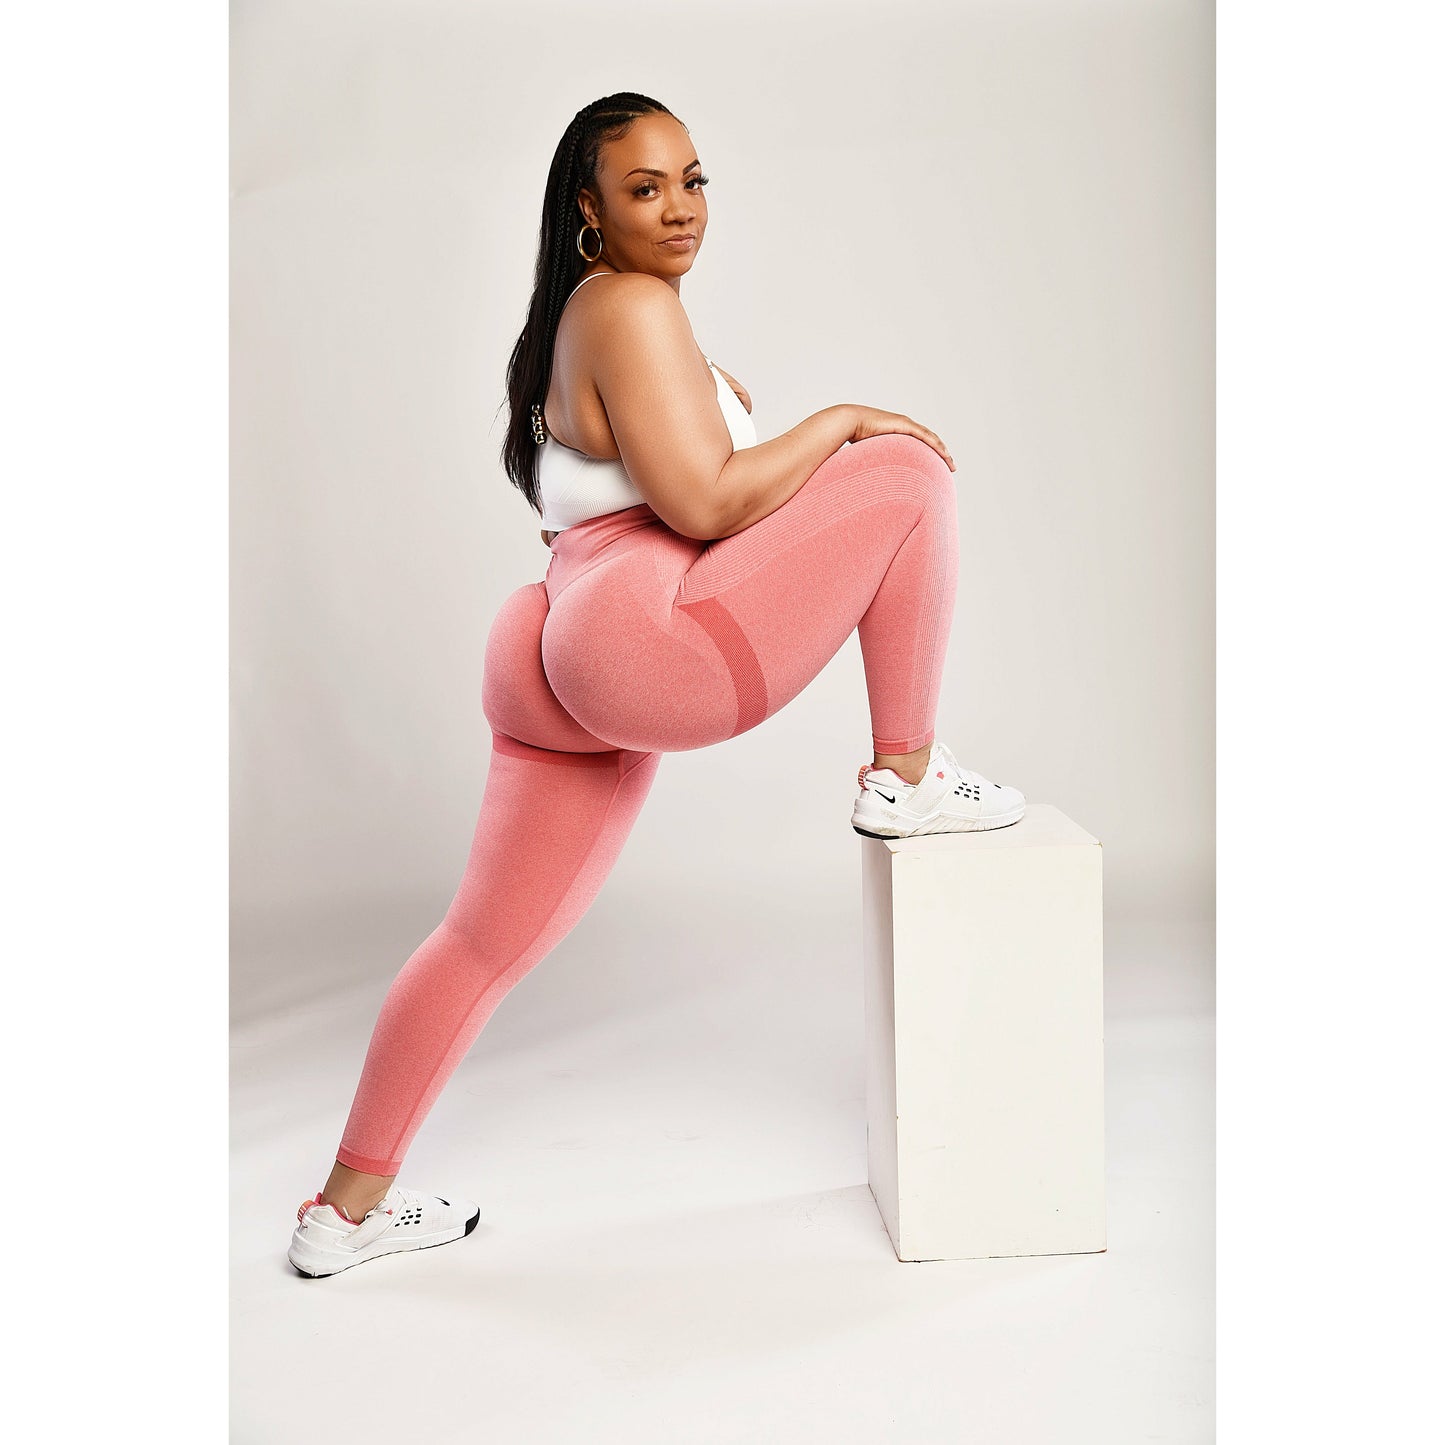 4lorish Scrunch Butt Leggings Activewear 4lorish Fitness, LLC Large Love Me Pink 